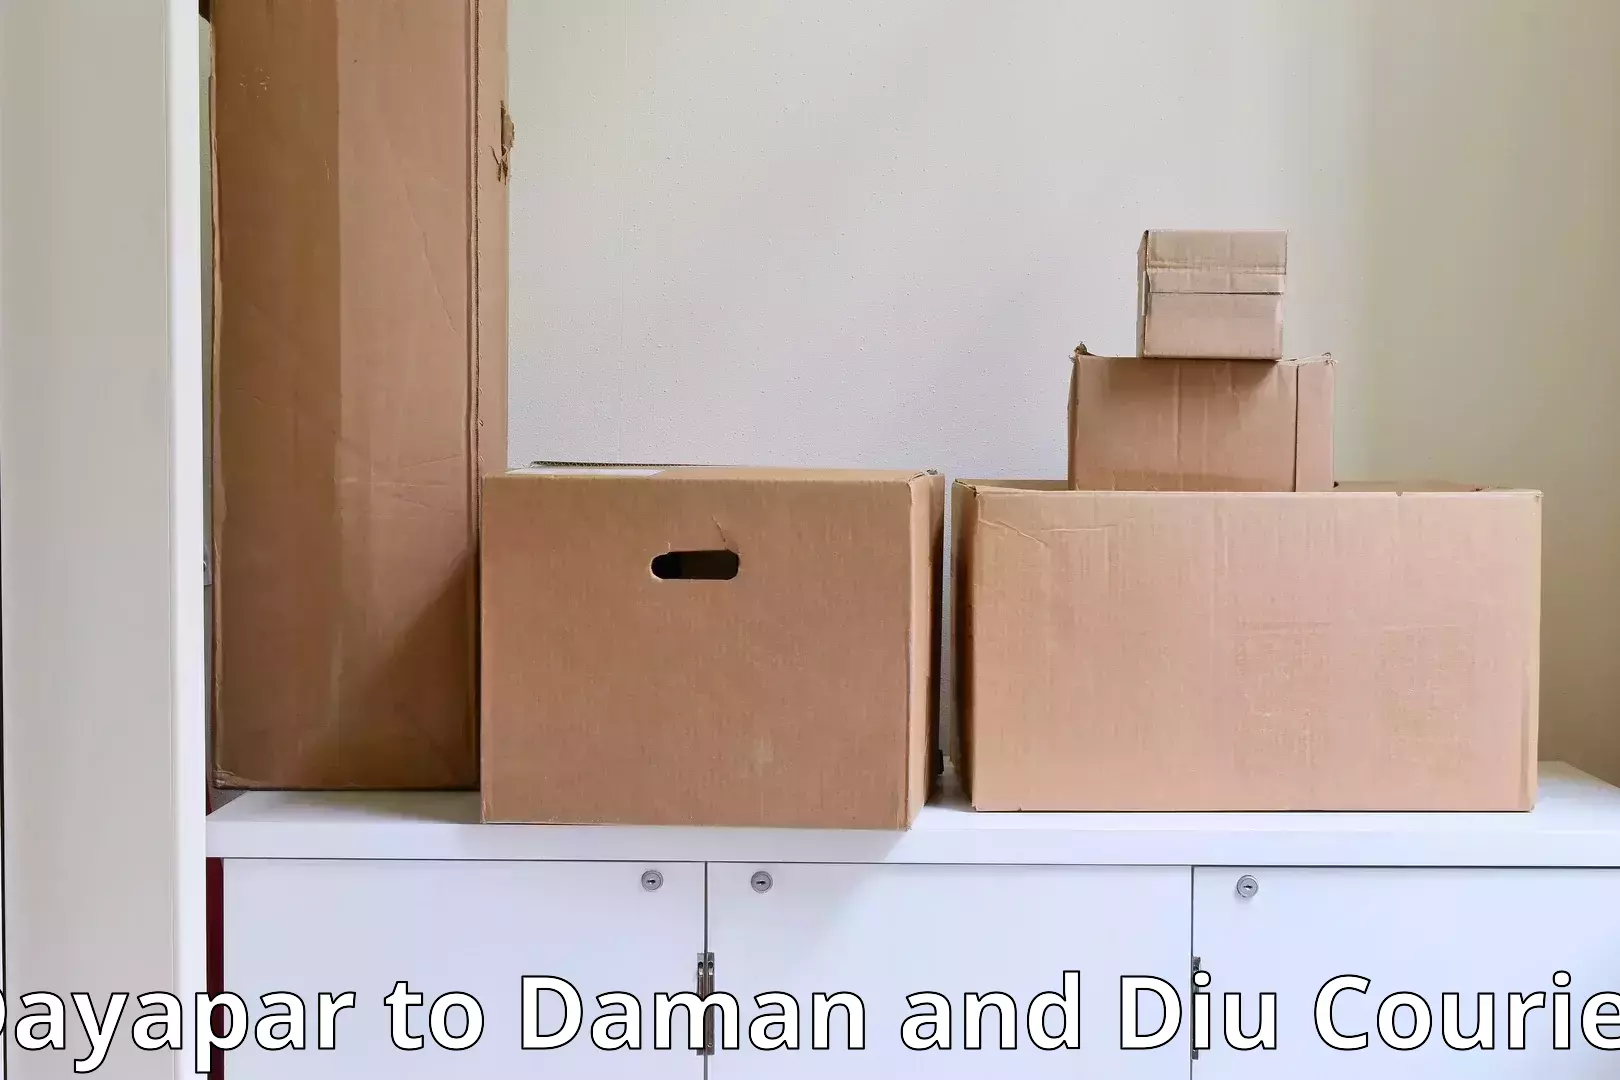 Furniture moving and handling Dayapar to Diu